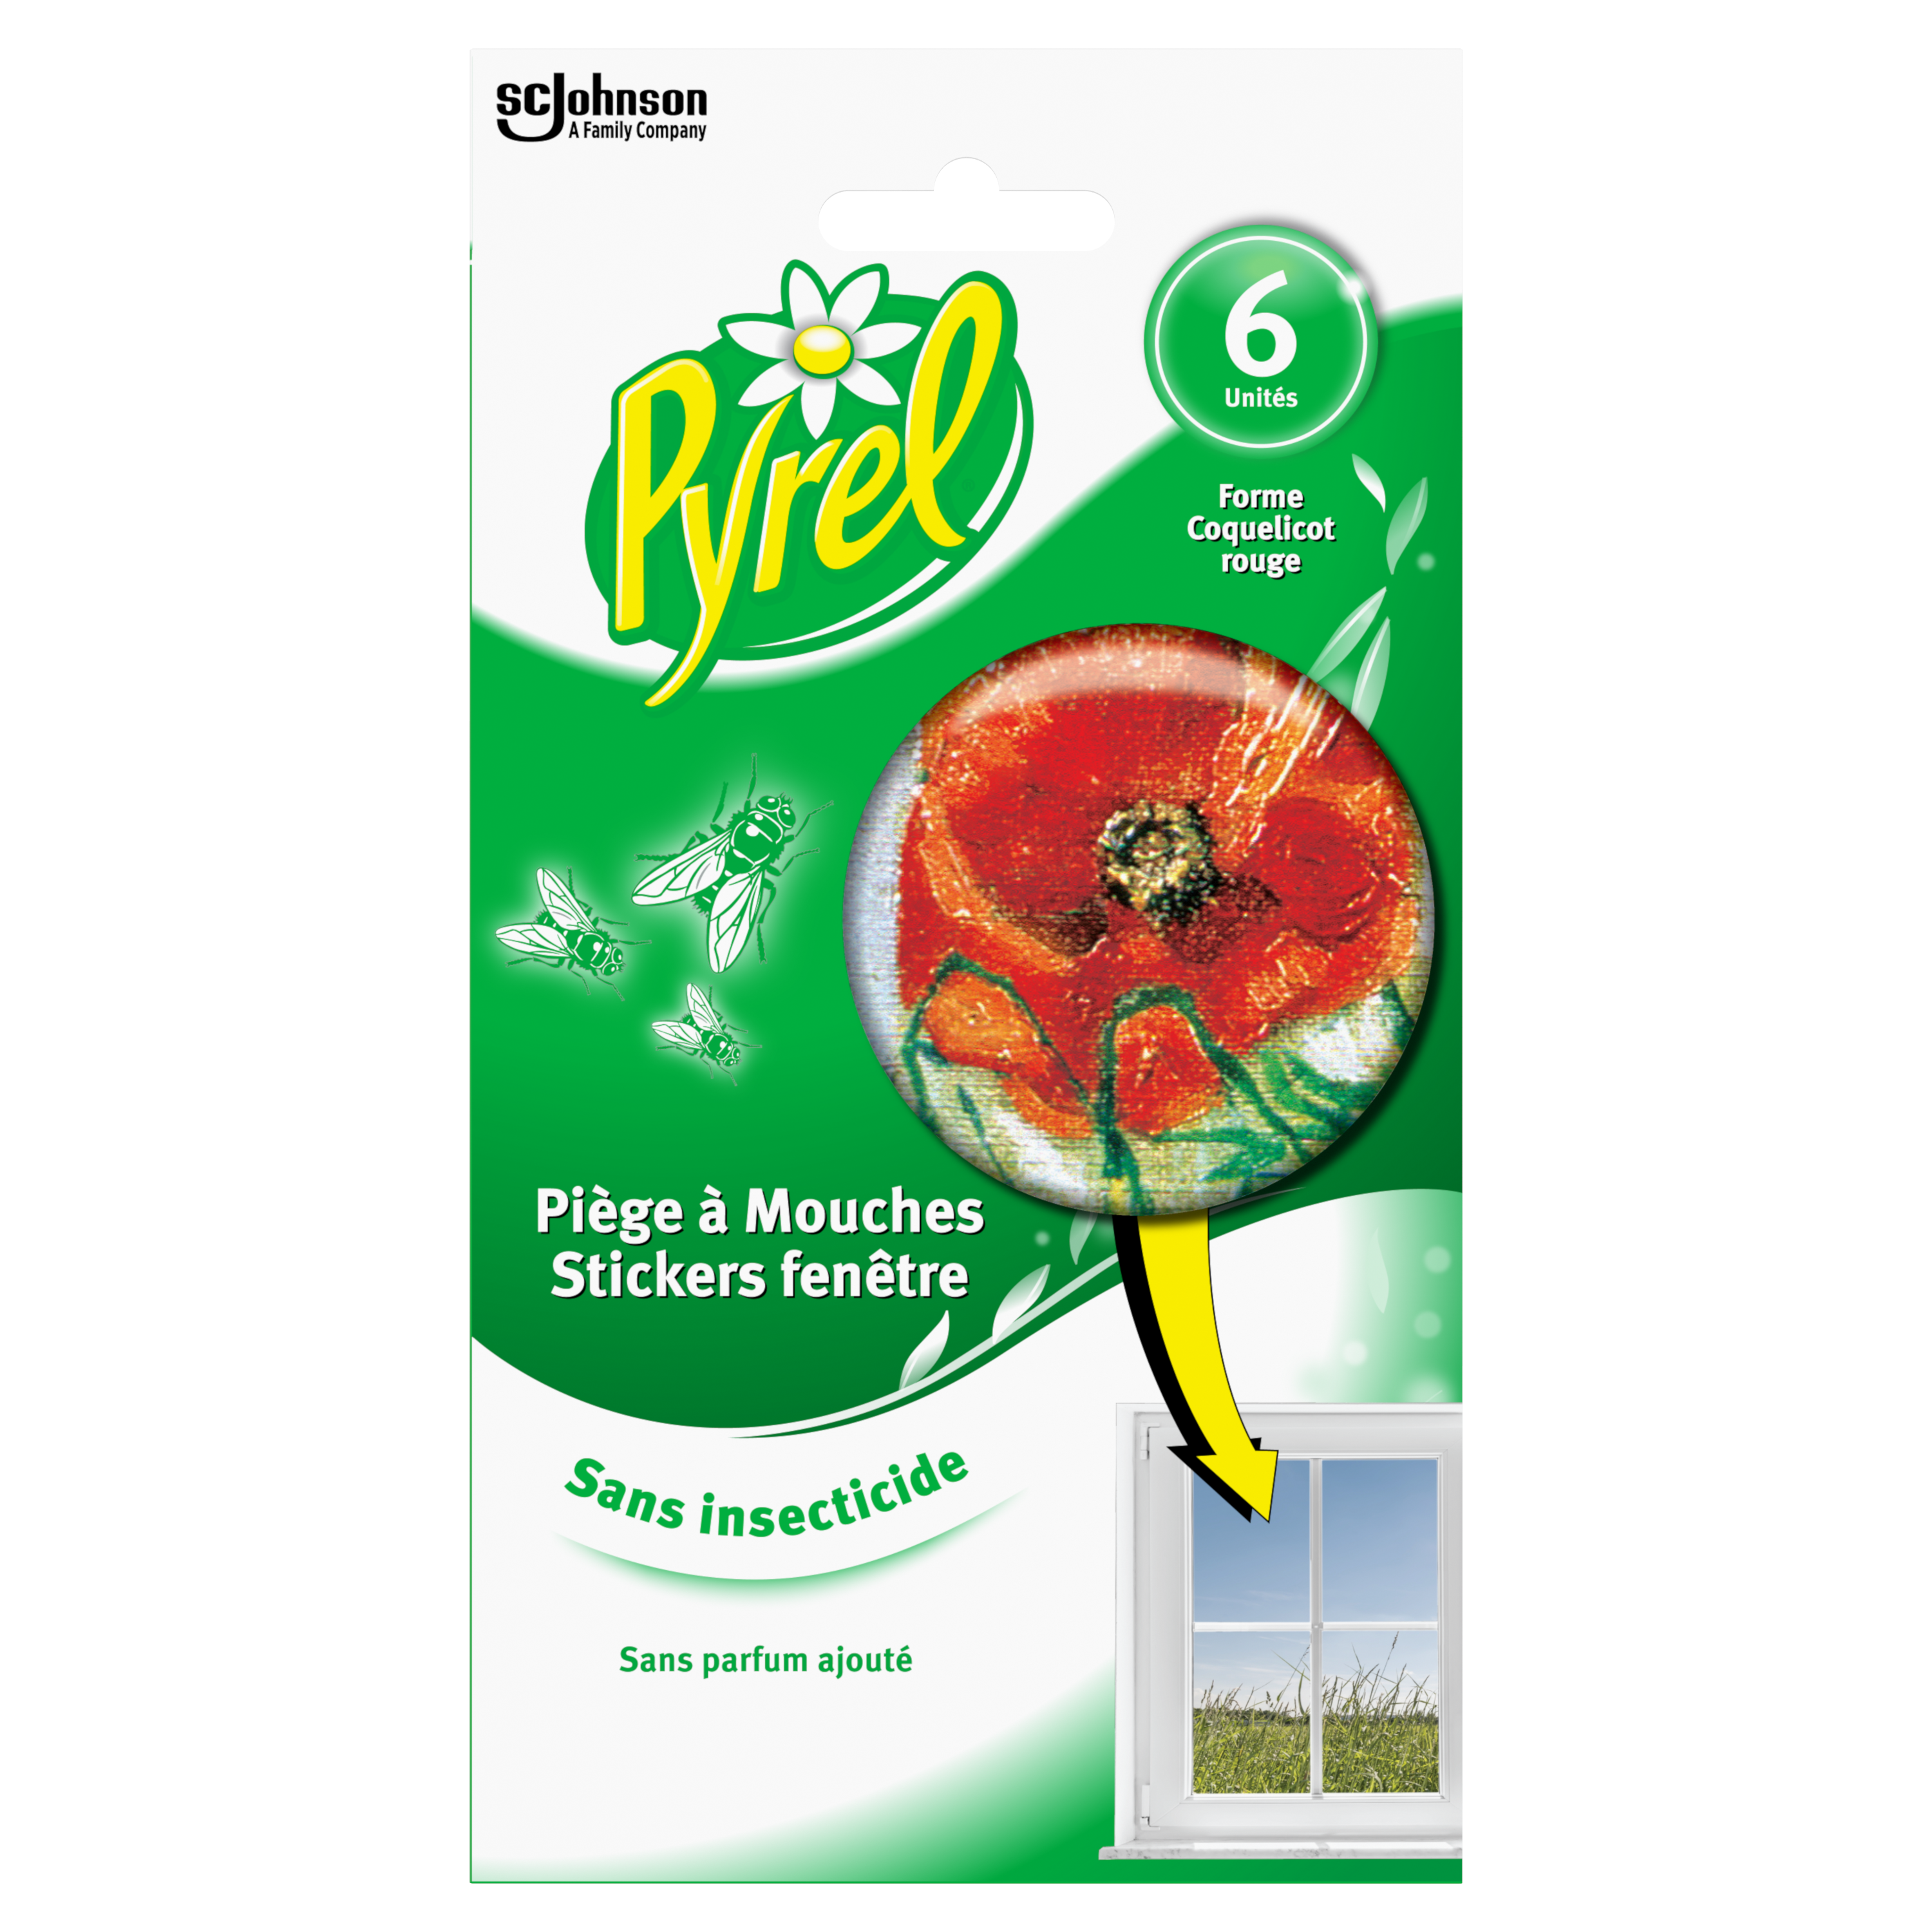 PYREL Piège à mouches en stickers fenêtre sans insecticide 6 stickers pas  cher 